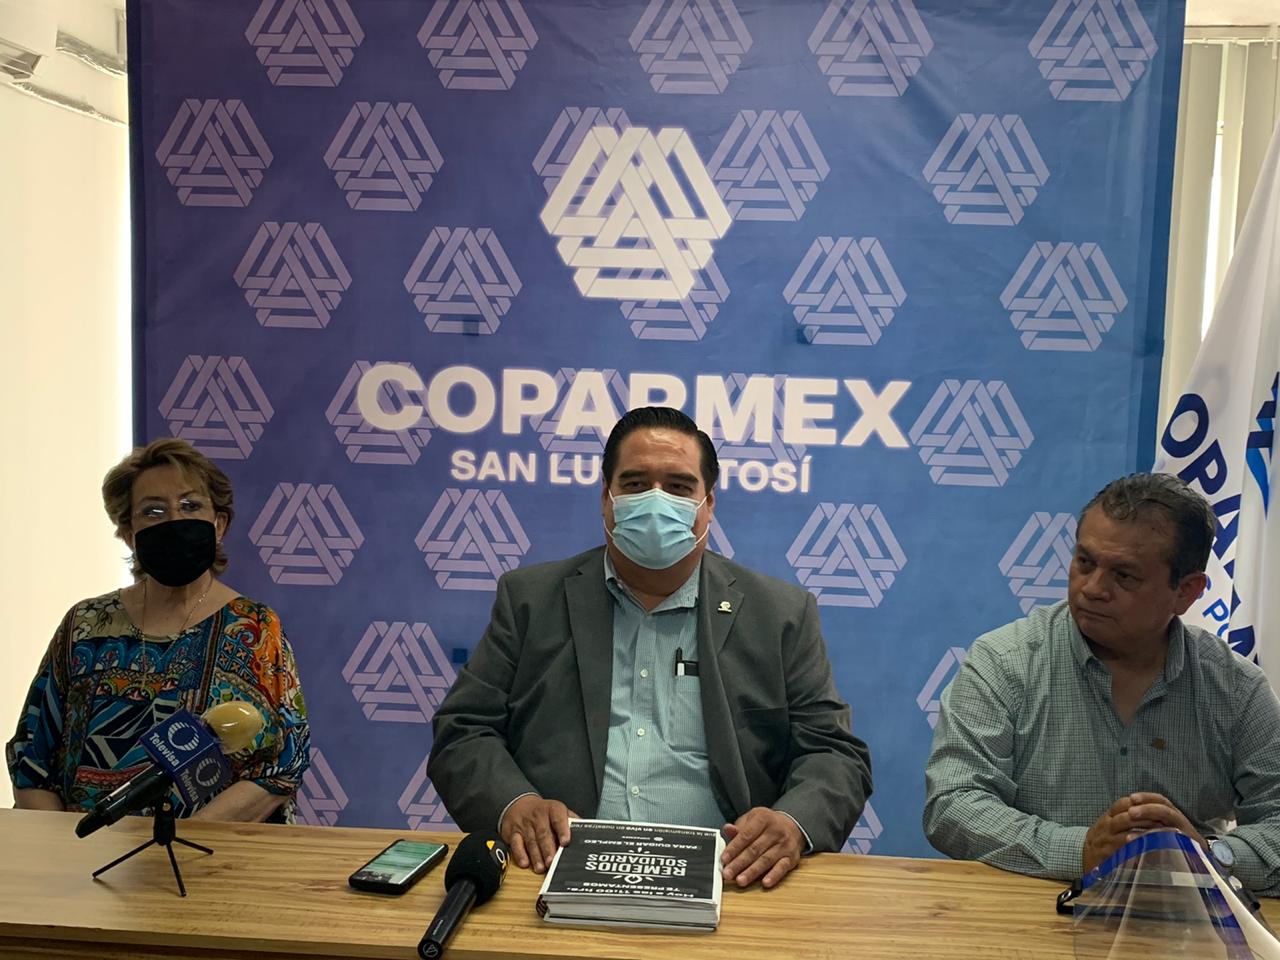  Coparmex propone programa “Remedios Solidarios” ante un millón 40 mil empleos perdidos en México